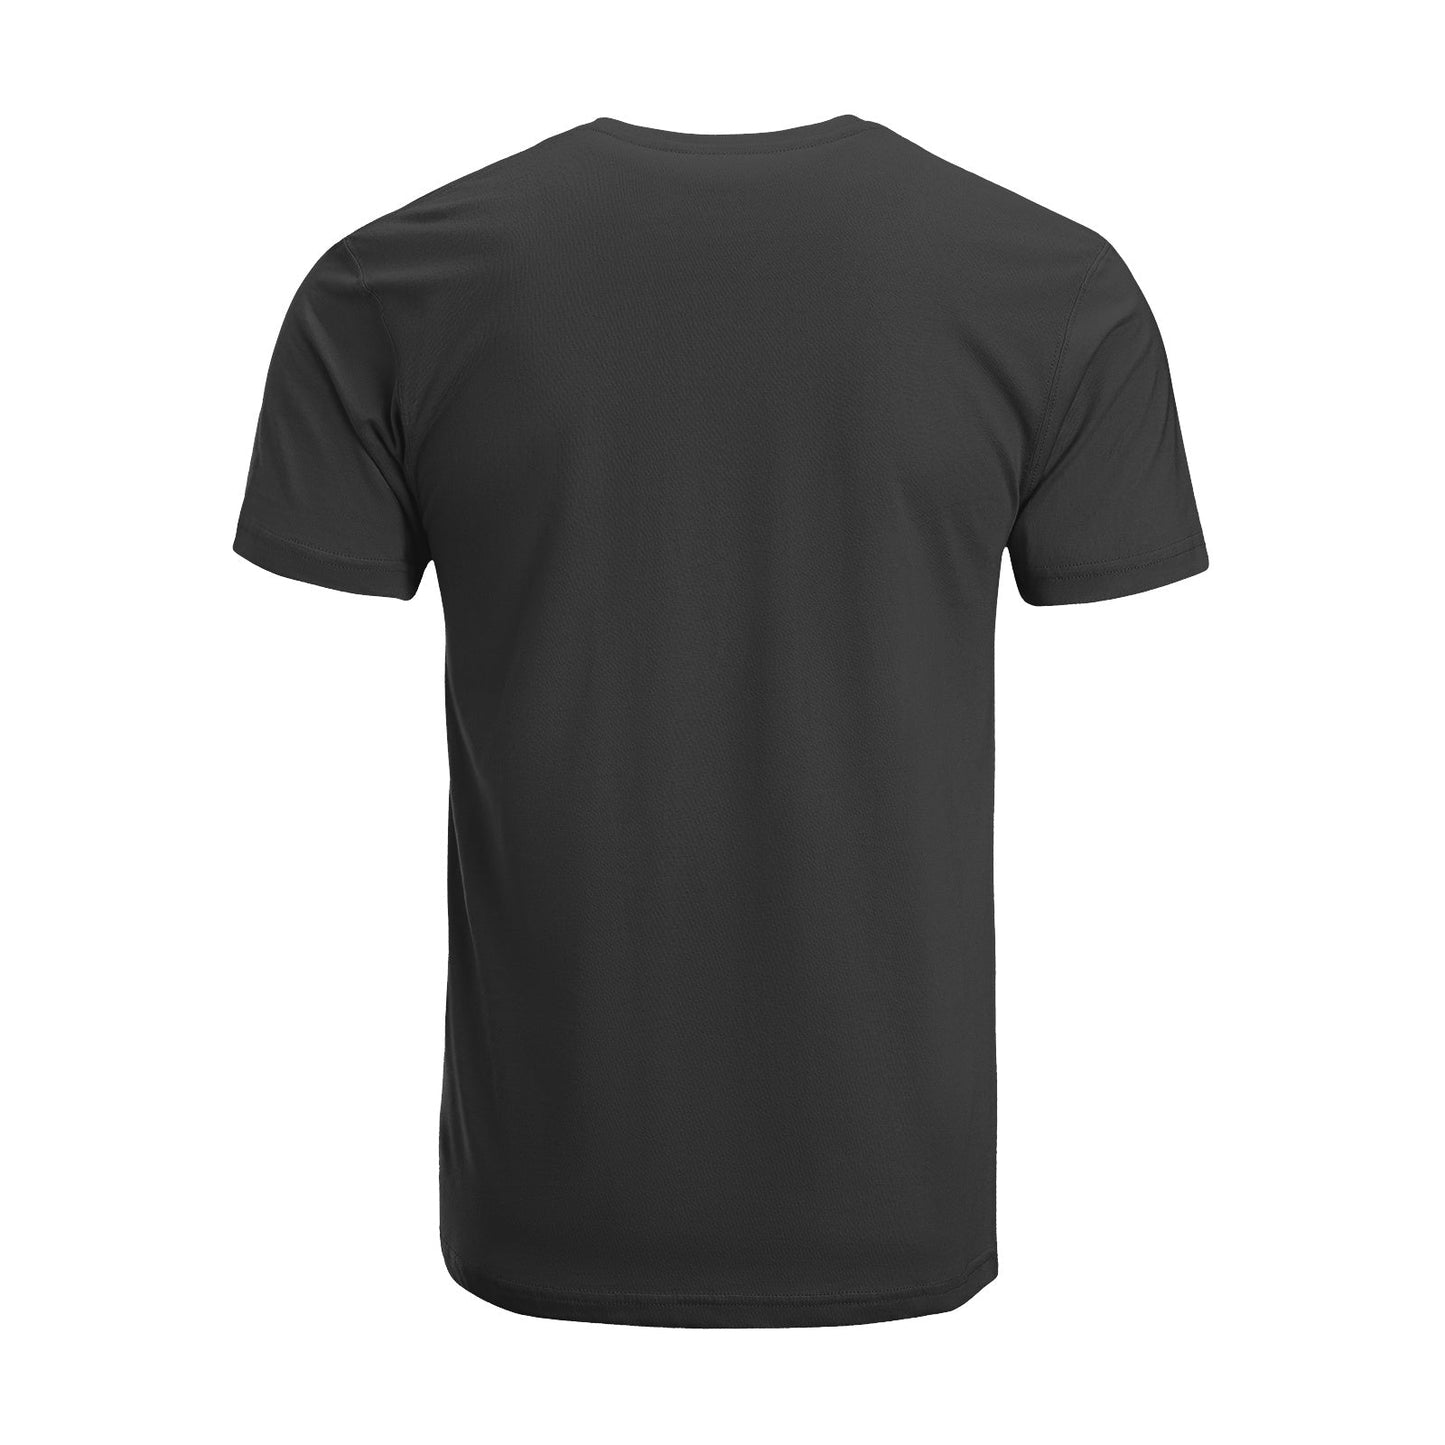 Unisex Short Sleeve Crew Neck Cotton Jersey T-Shirt TRUCK 28